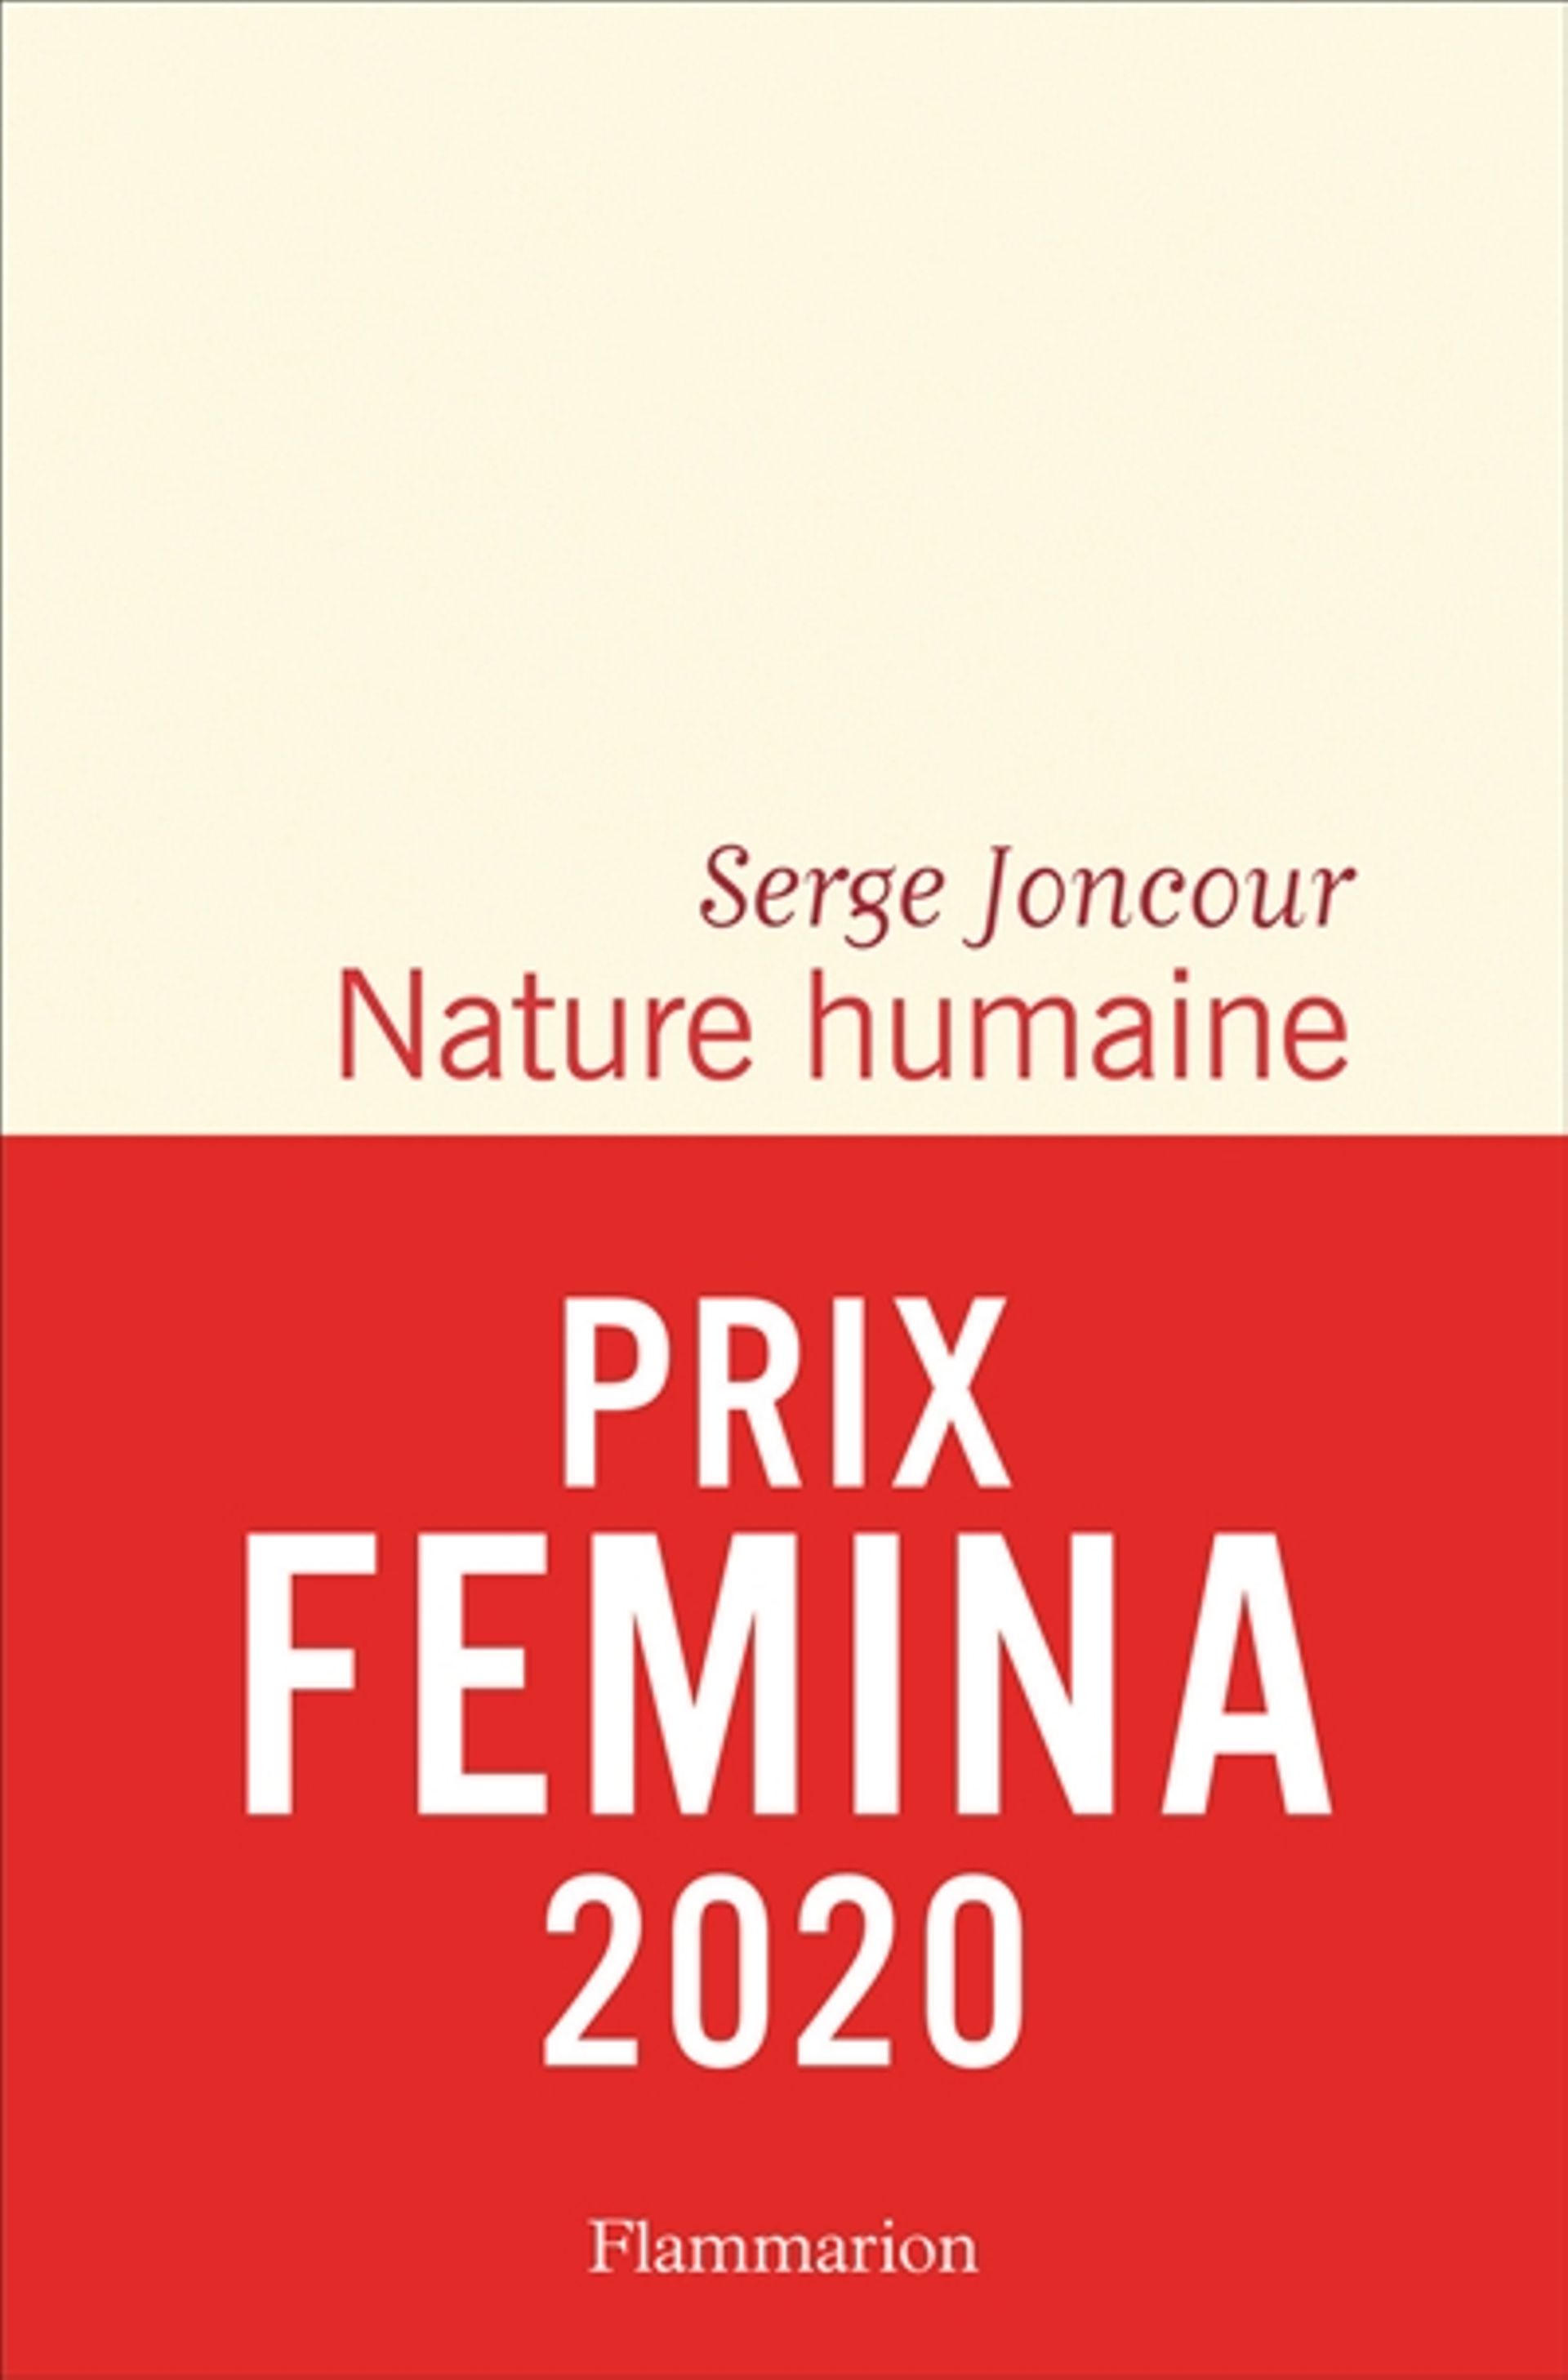 Nature humaine, de Serge Joncour, prix Femina 2020